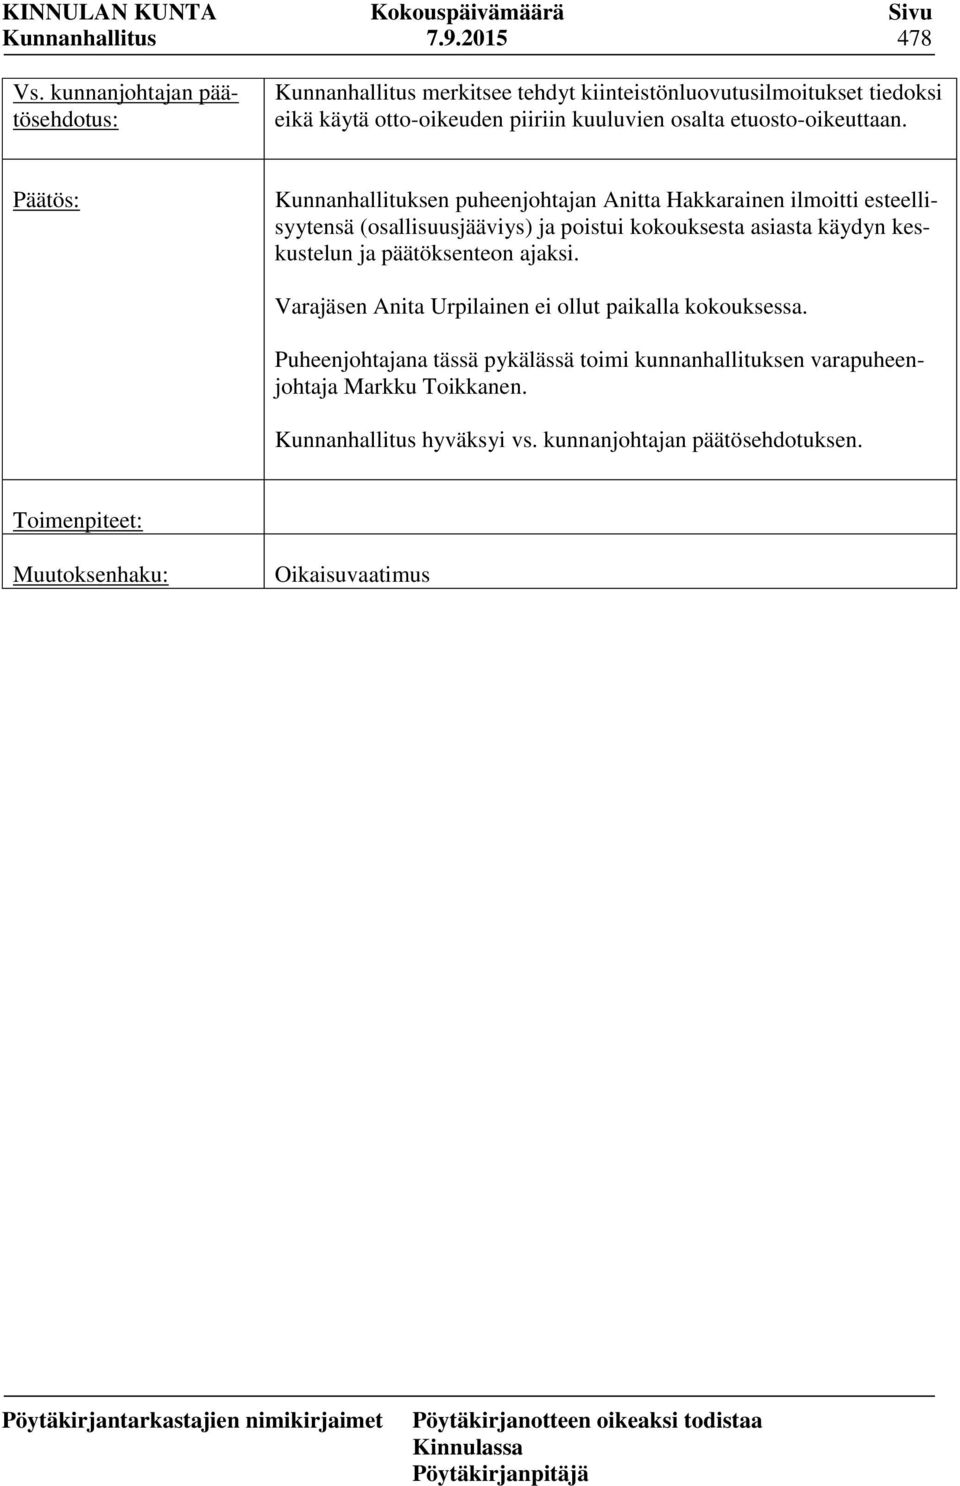 Kunnanhallituksen puheenjohtajan Anitta Hakkarainen ilmoitti esteellisyytensä (osallisuusjääviys) ja poistui kokouksesta asiasta